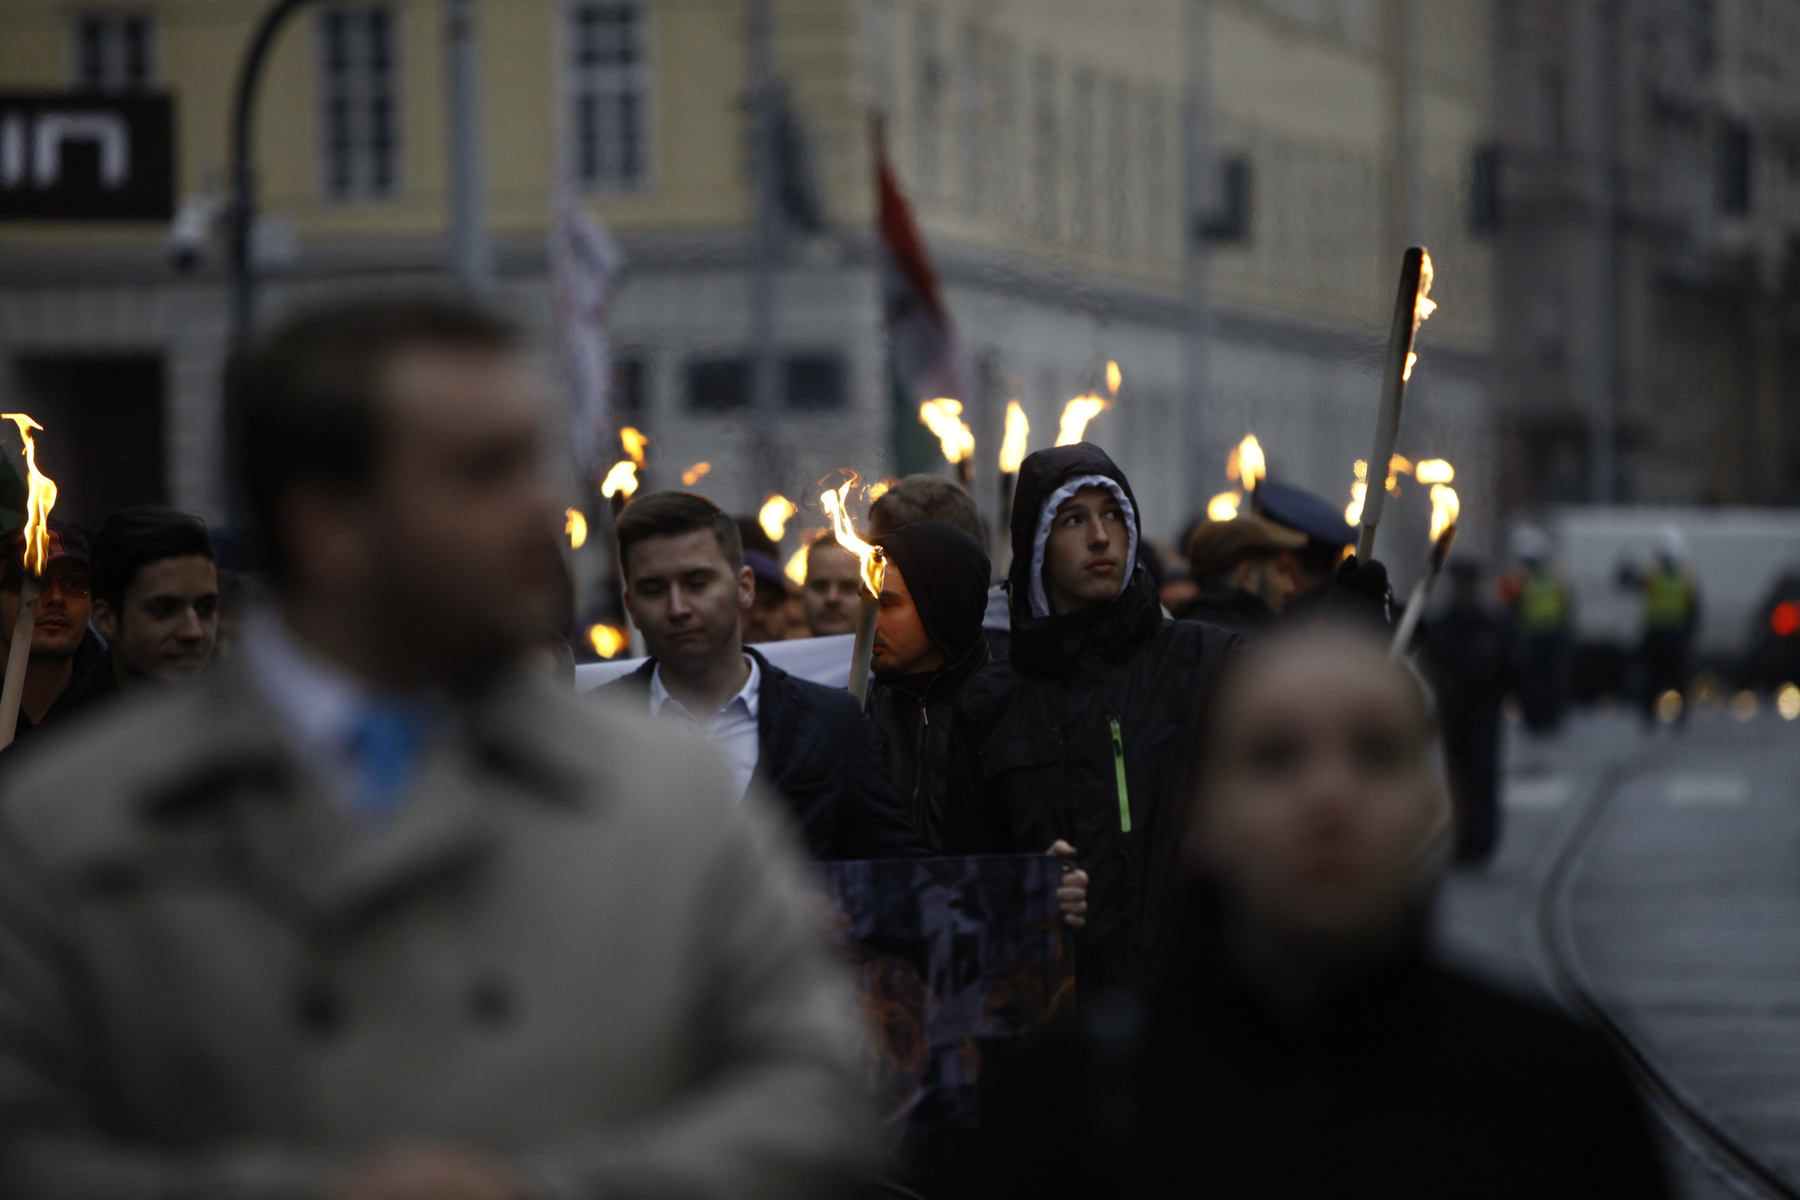 Fekete-Győr azt ígéri, hogy a Momentum elindít egy, a szavazás fontosságára figyelmeztető kampányt, ami egy 